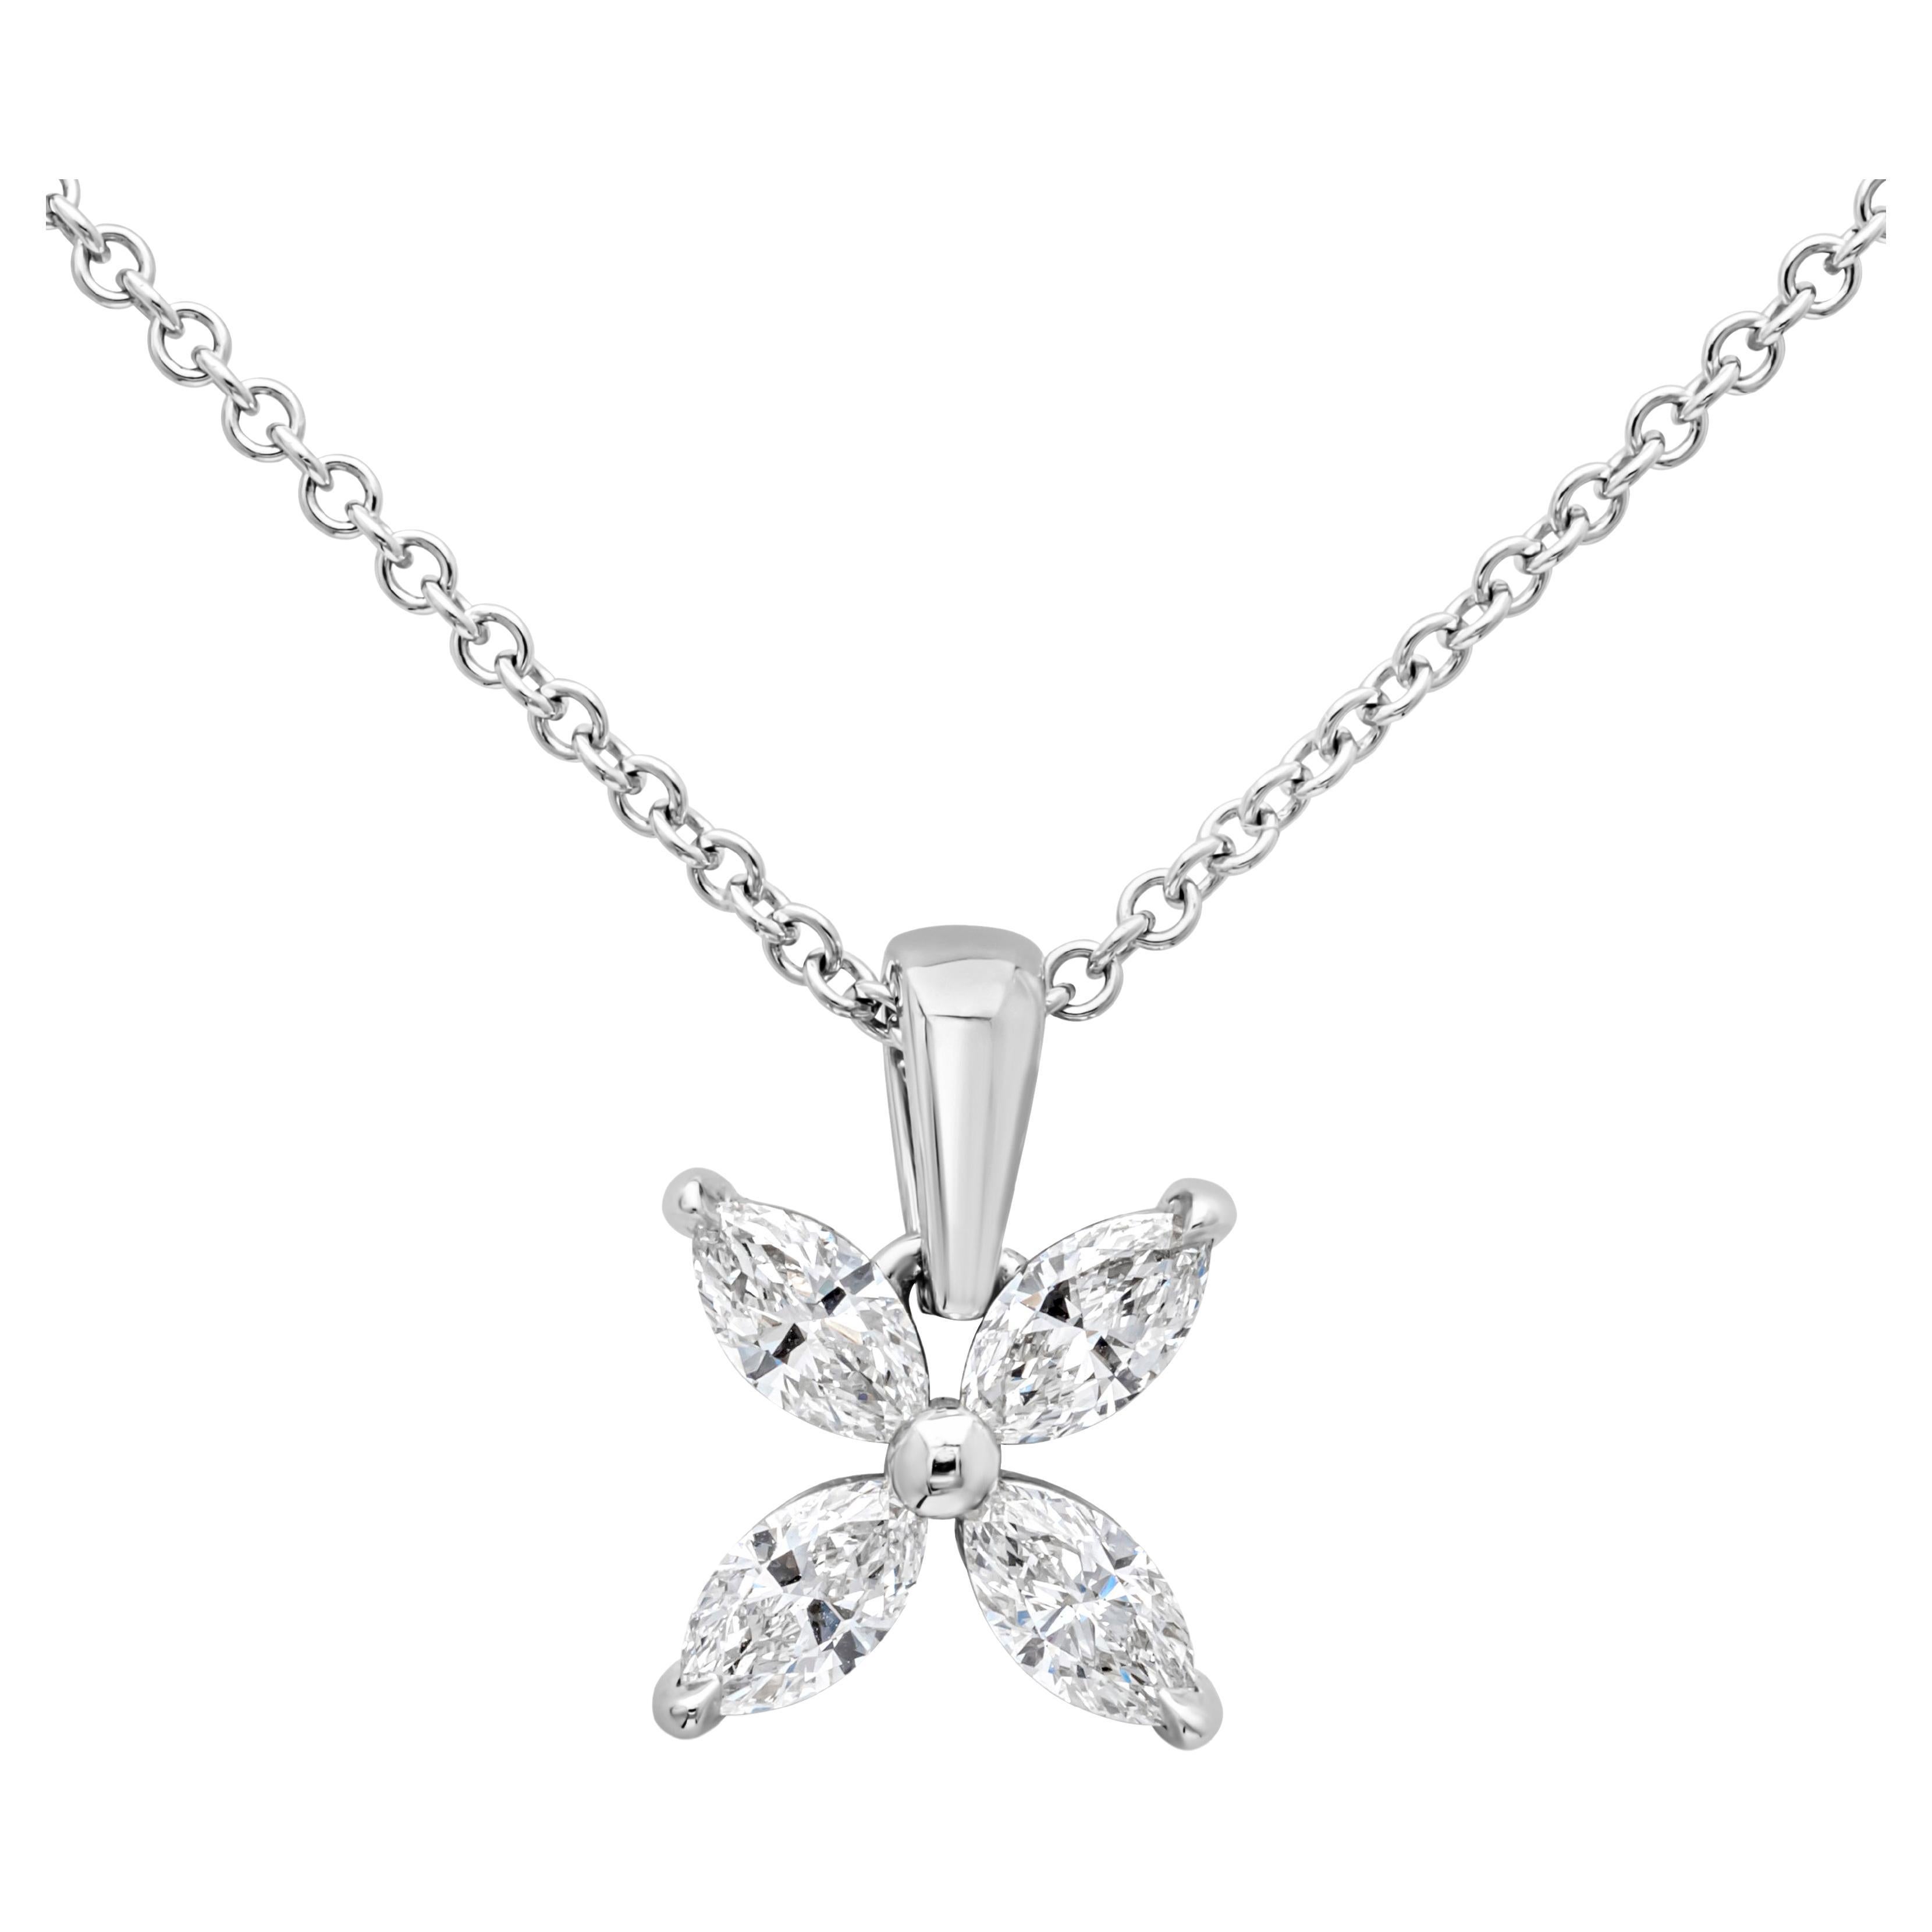 Roman Malakov, collier pendentif à motif floral avec diamants marquises de 0,92 carat au total 